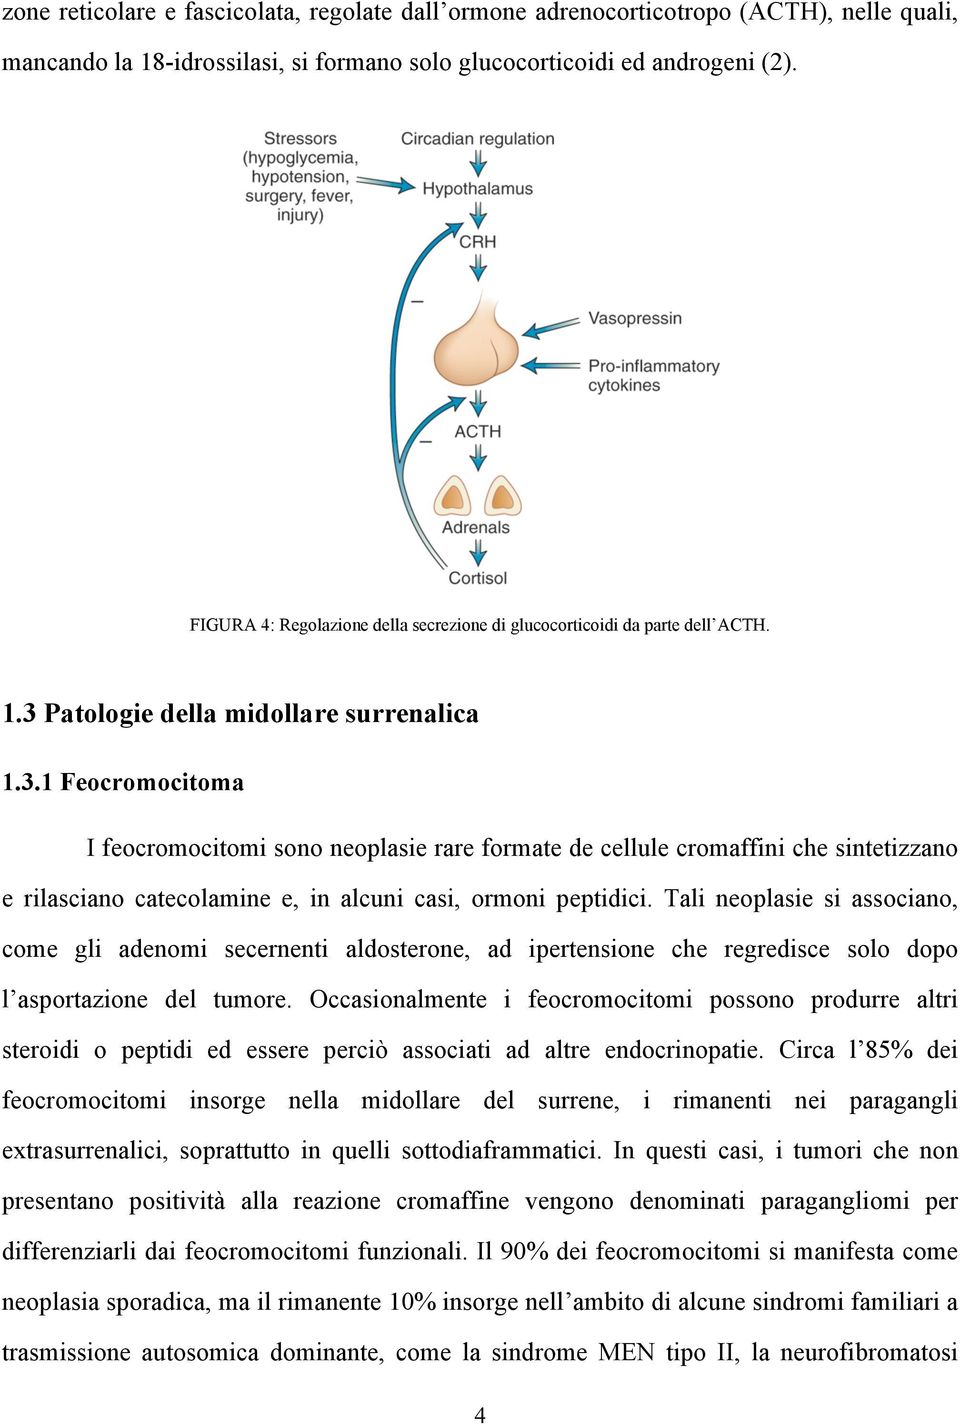 Patologie della midollare surrenalica 1.3.